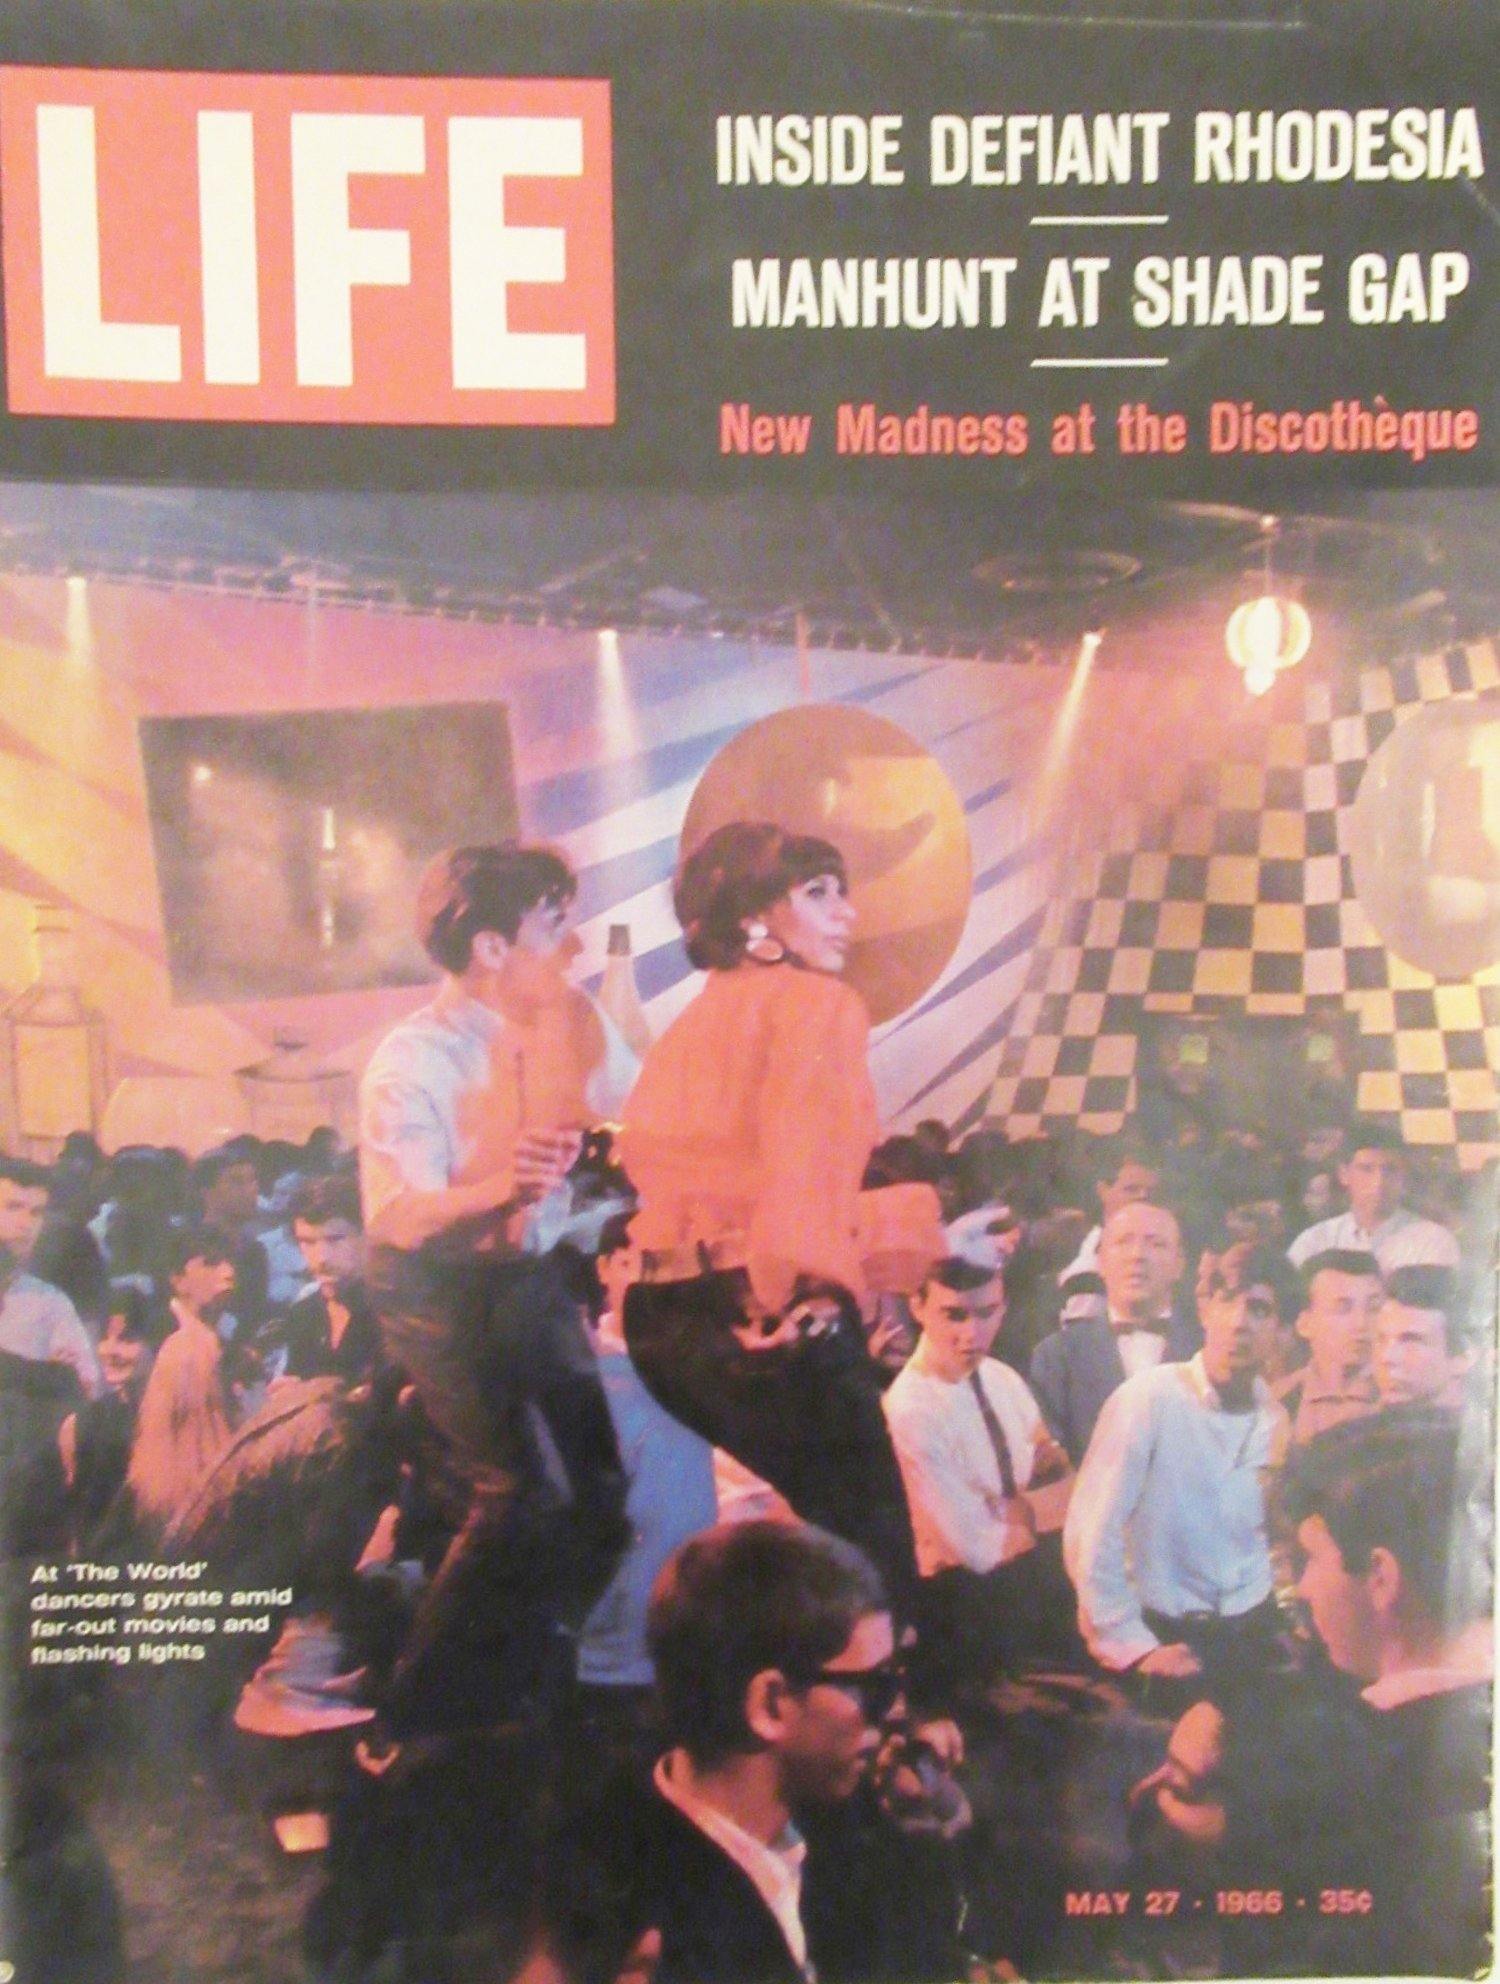 Vintage LIFE Magazine May 27, 1966 - Lamoree’s Vintage